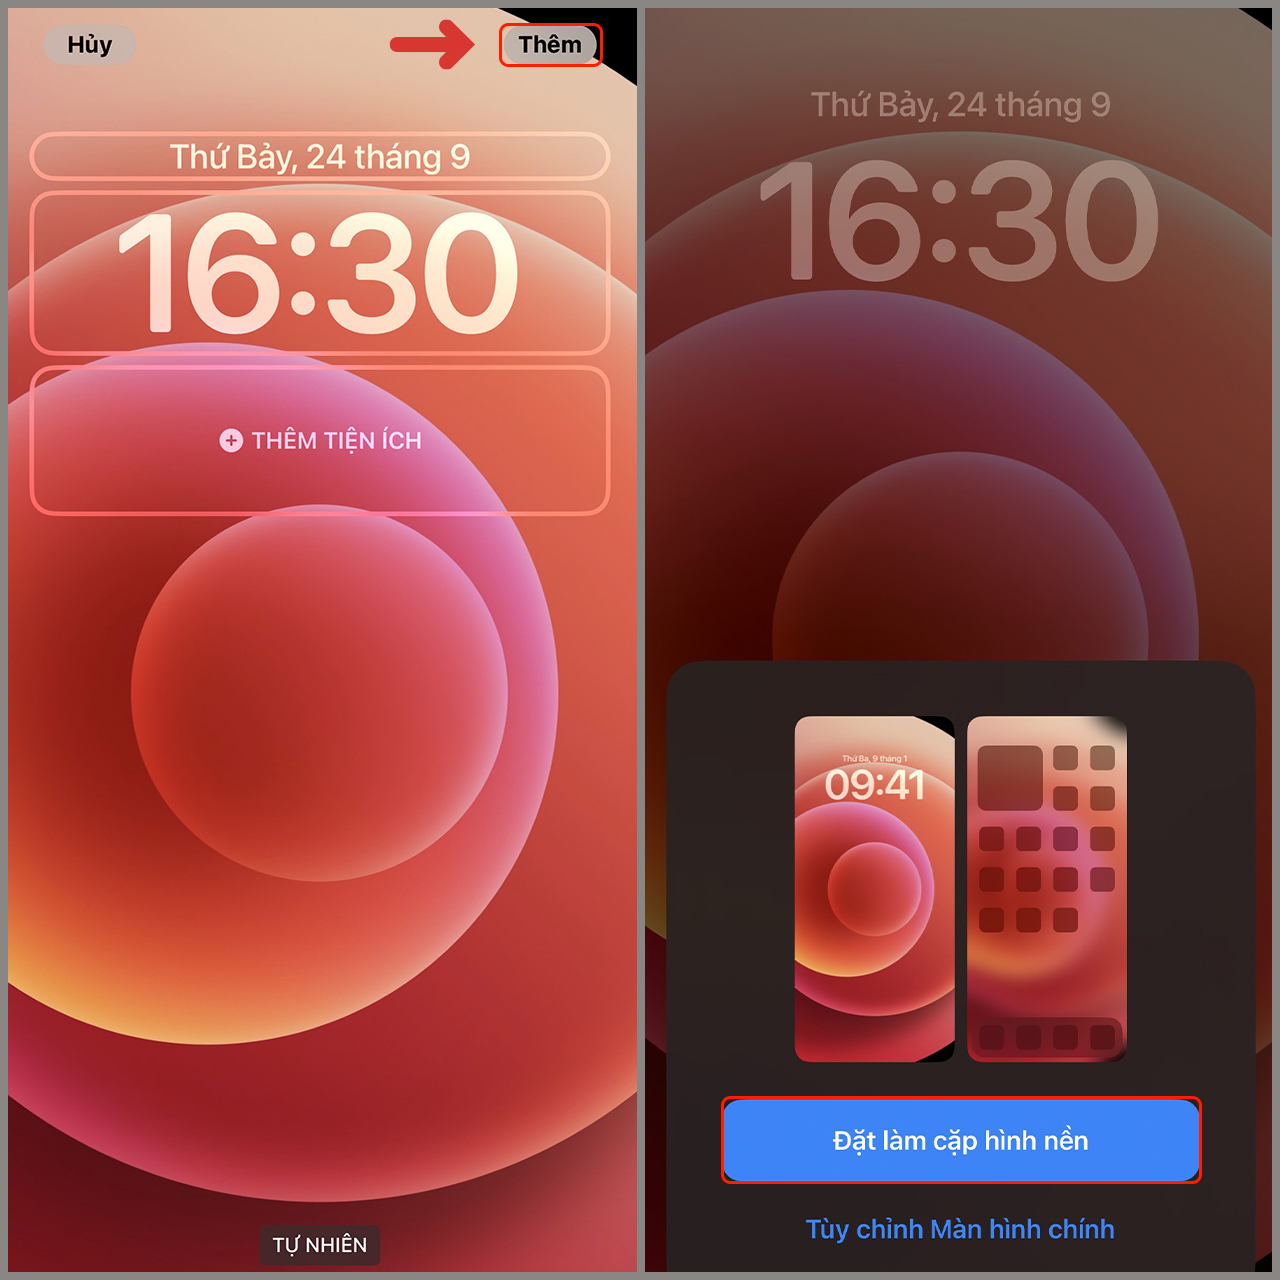 Cách cài và tải hình nền iPhone 12 Pro Max đẹp độc đáo  Hướng dẫn kỹ thuật